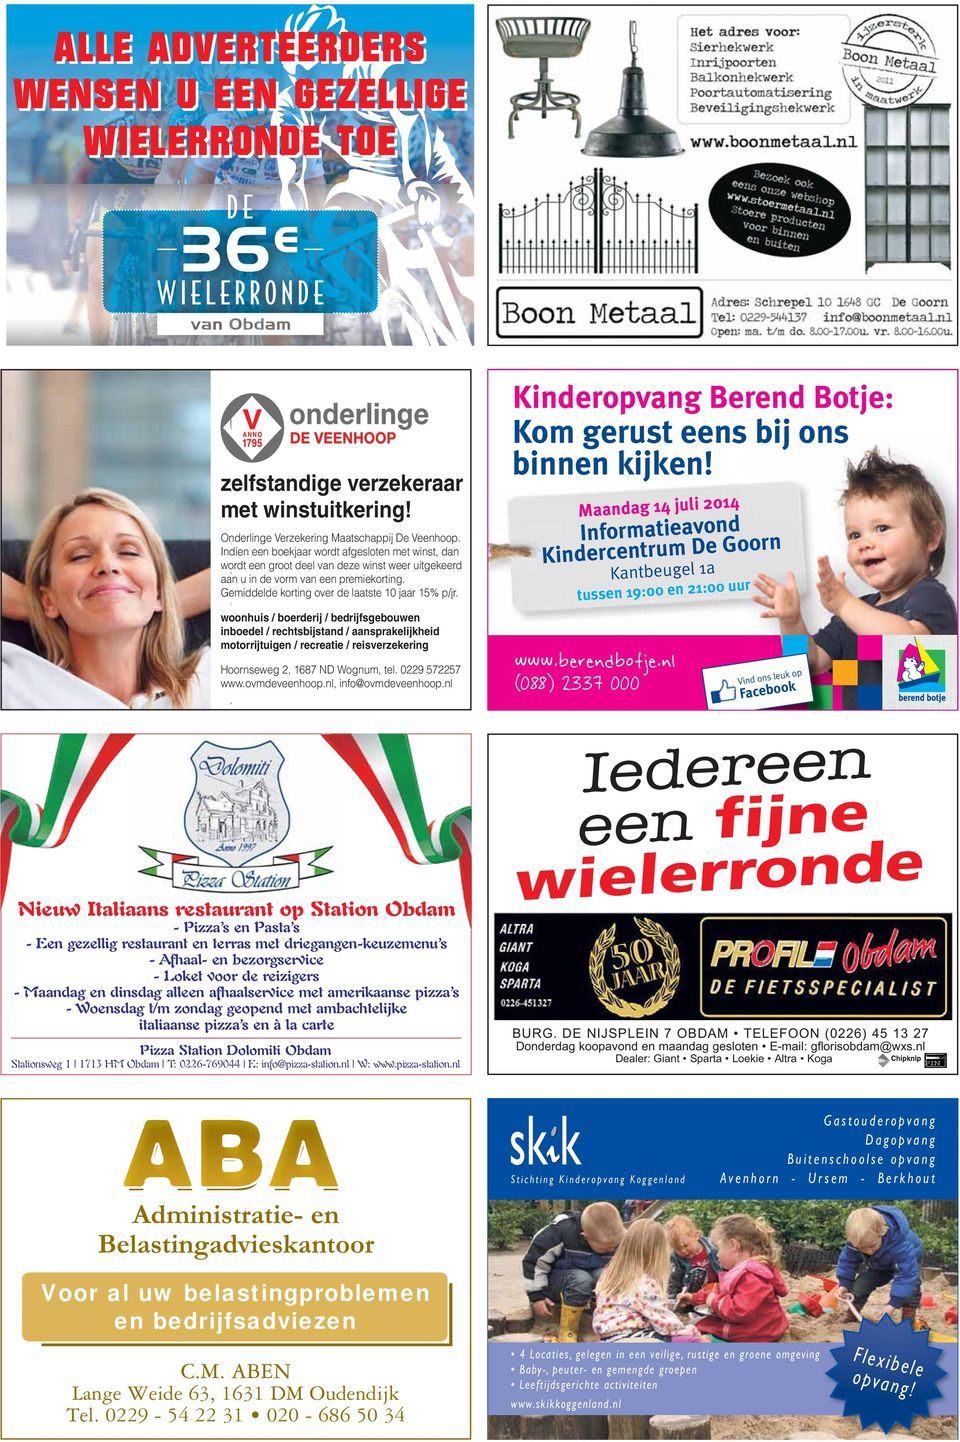 Maandag 14 juli 2014 Informatieavond Kindercentrum De Goorn Kantbeugel 1a tussen 19:00 en 21:00 uur www.berendbotje.